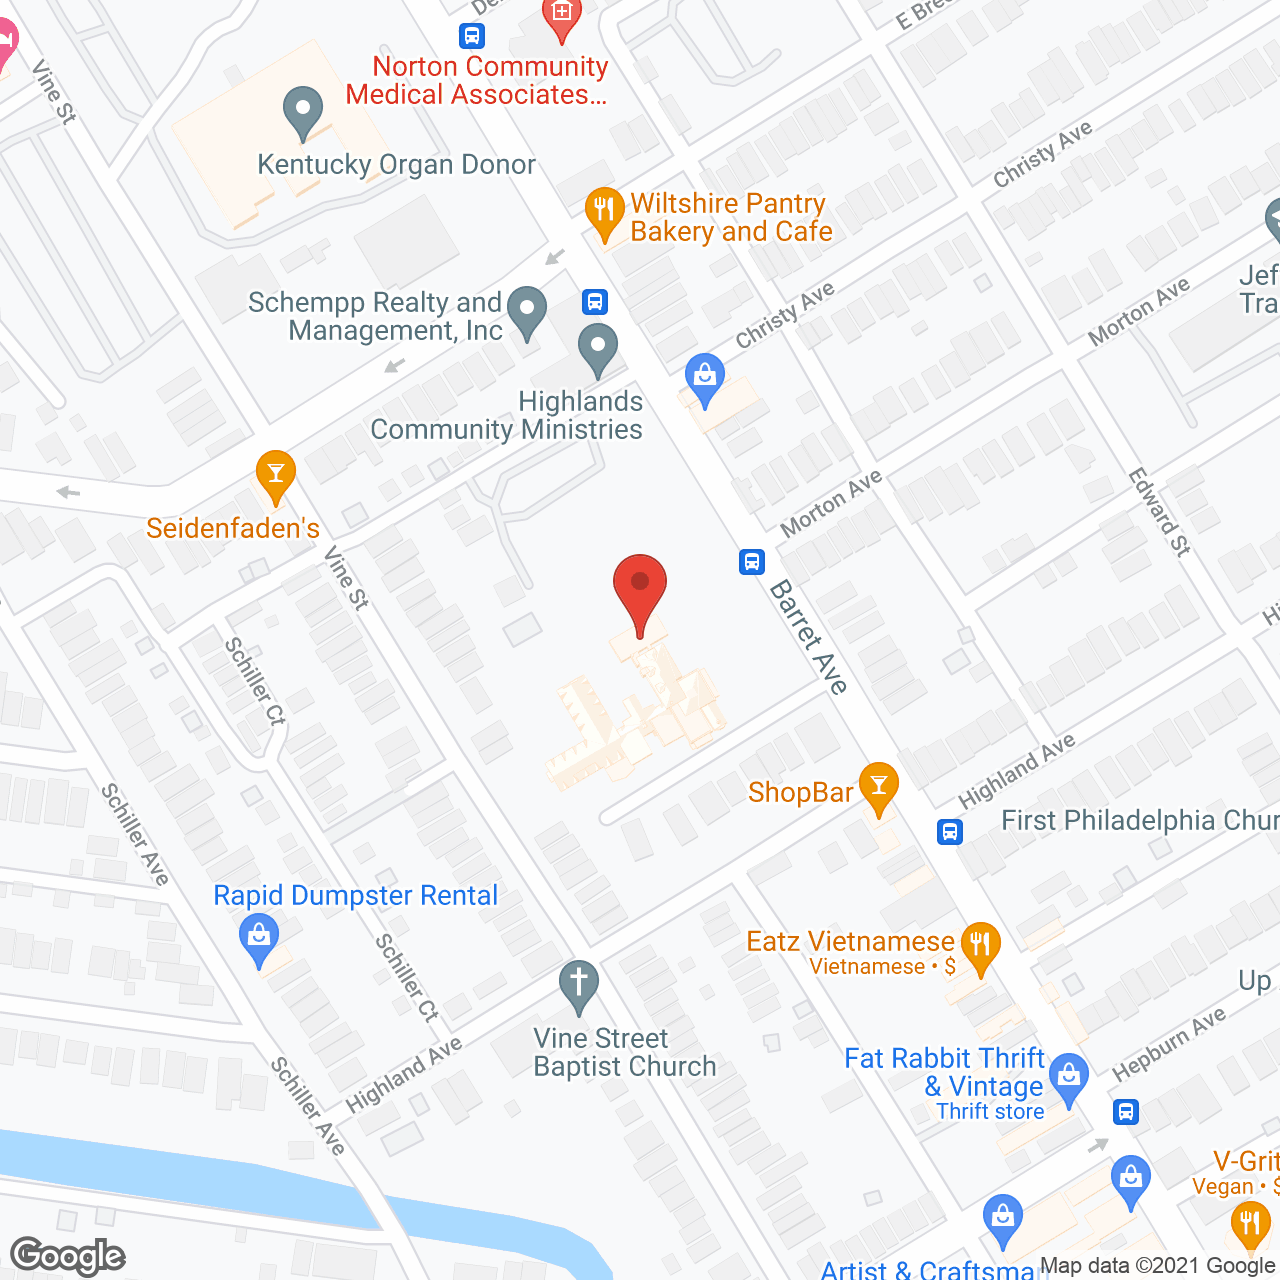 The Altenheim in google map